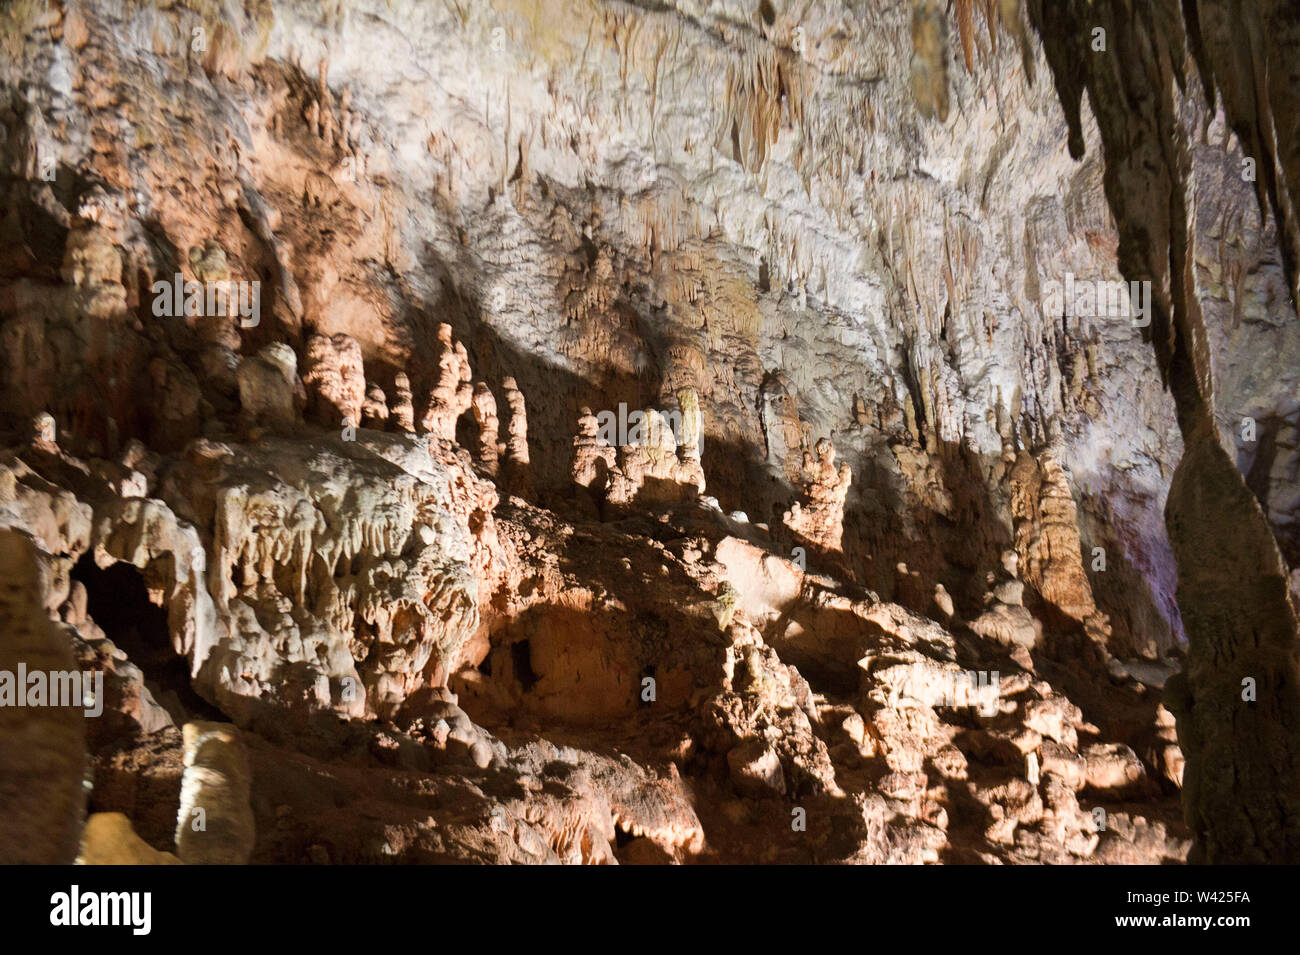 L'Europe, Italie, Campanie, les grottes de Pertosa - Auletta. En vertu de la montagnes Alburni exécute le Negro dans les grottes permettant la navigation Banque D'Images